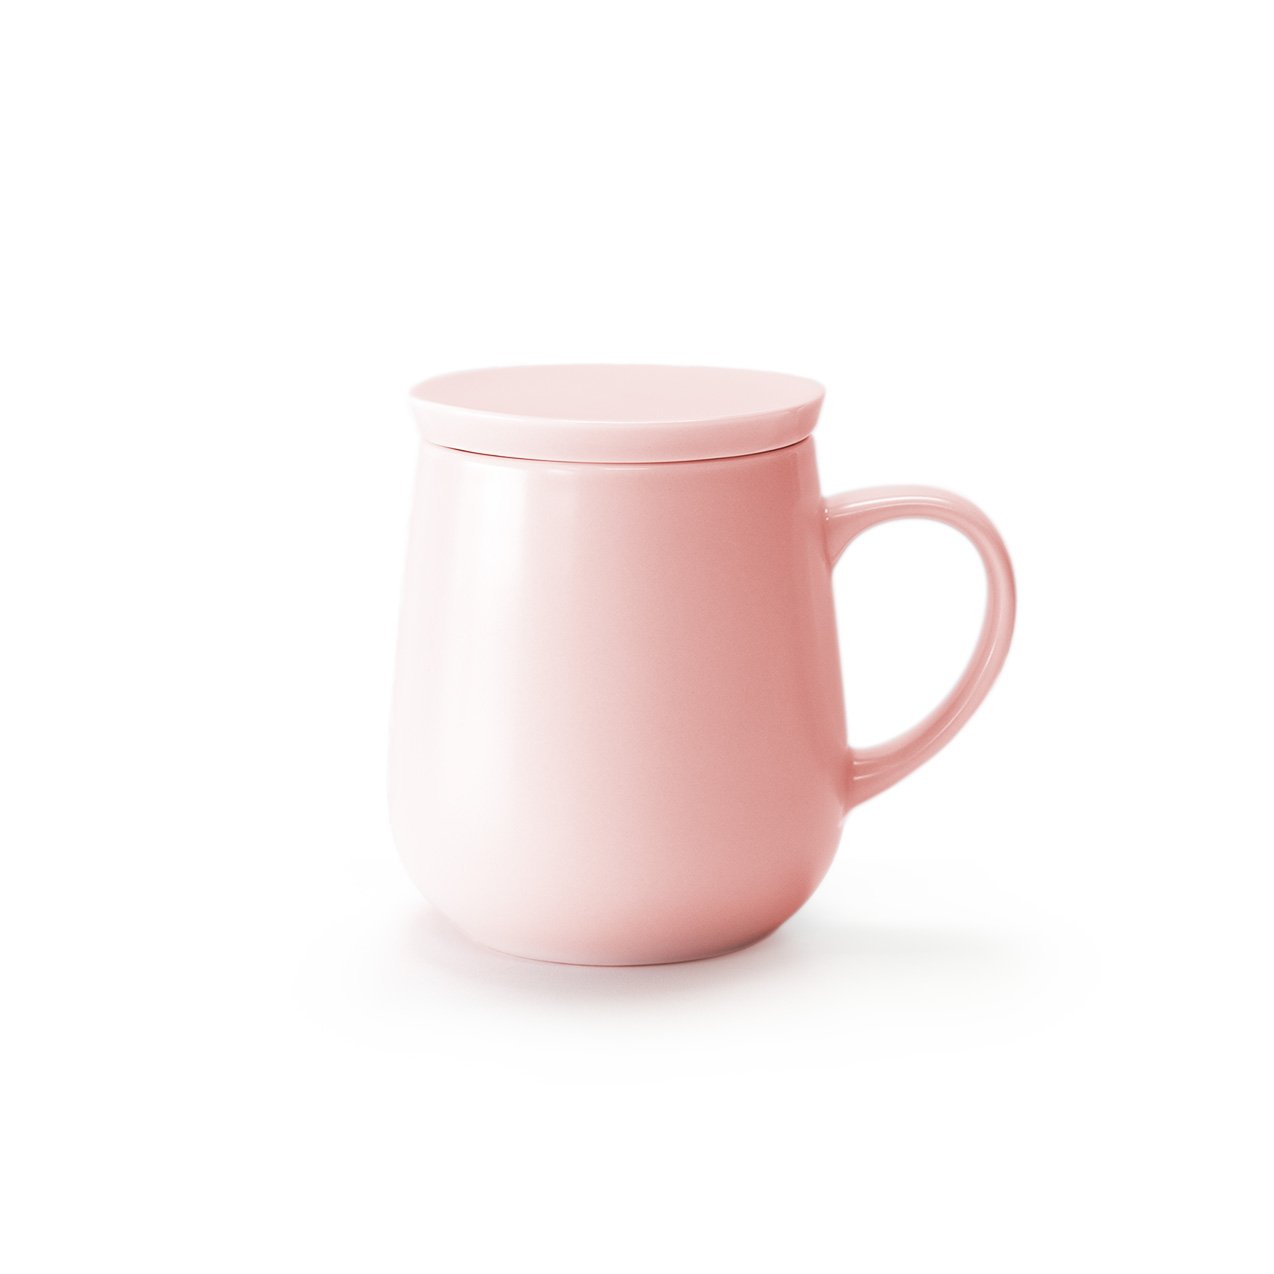 Small pink mug with lid